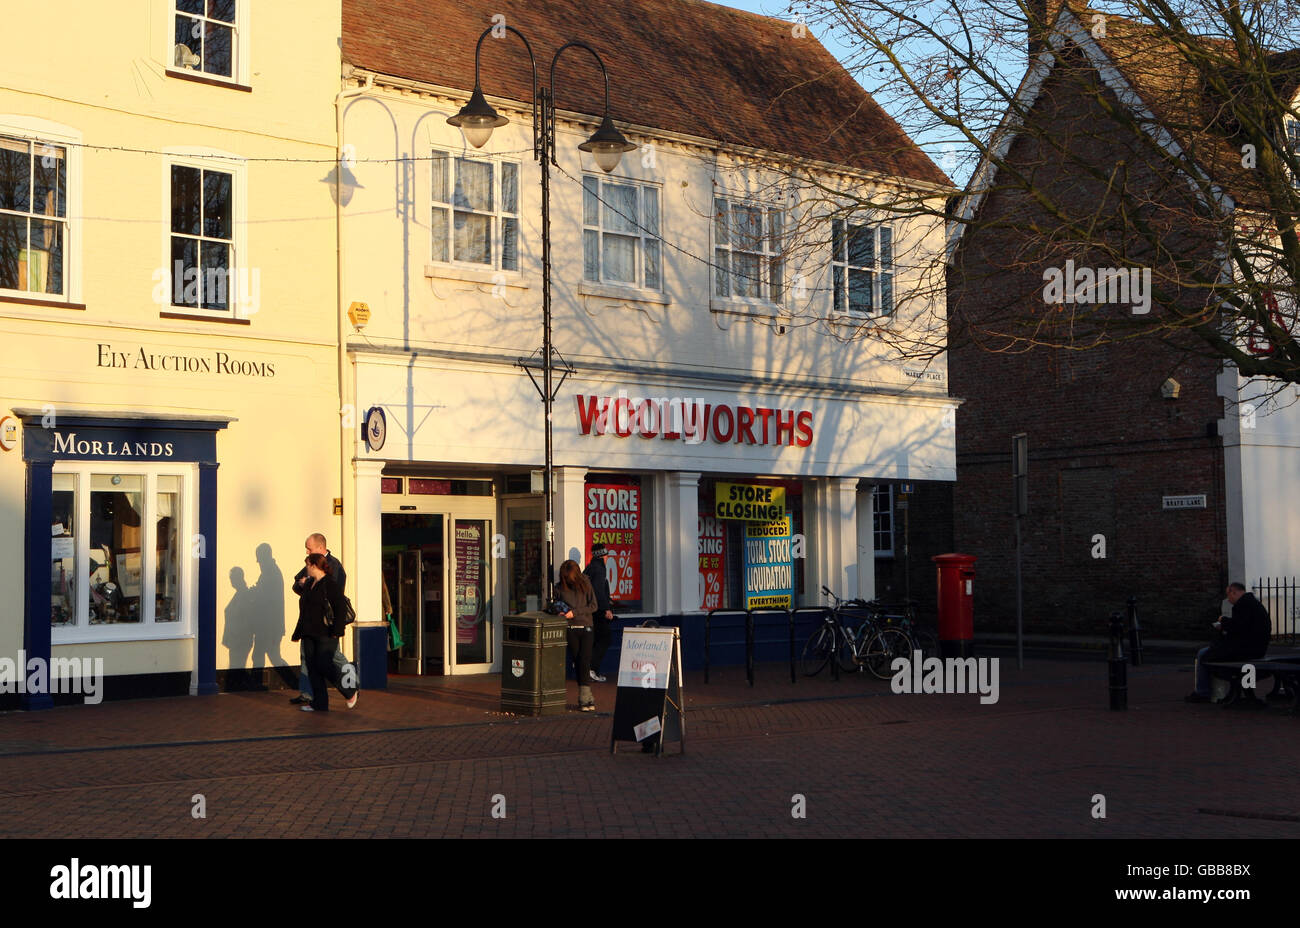 Cierres Woolworths. Una vista general de la tienda Woolworths, en Ely, Cambridgeshire. 5 Market PL, Ely, CB7 4NU. Foto de stock